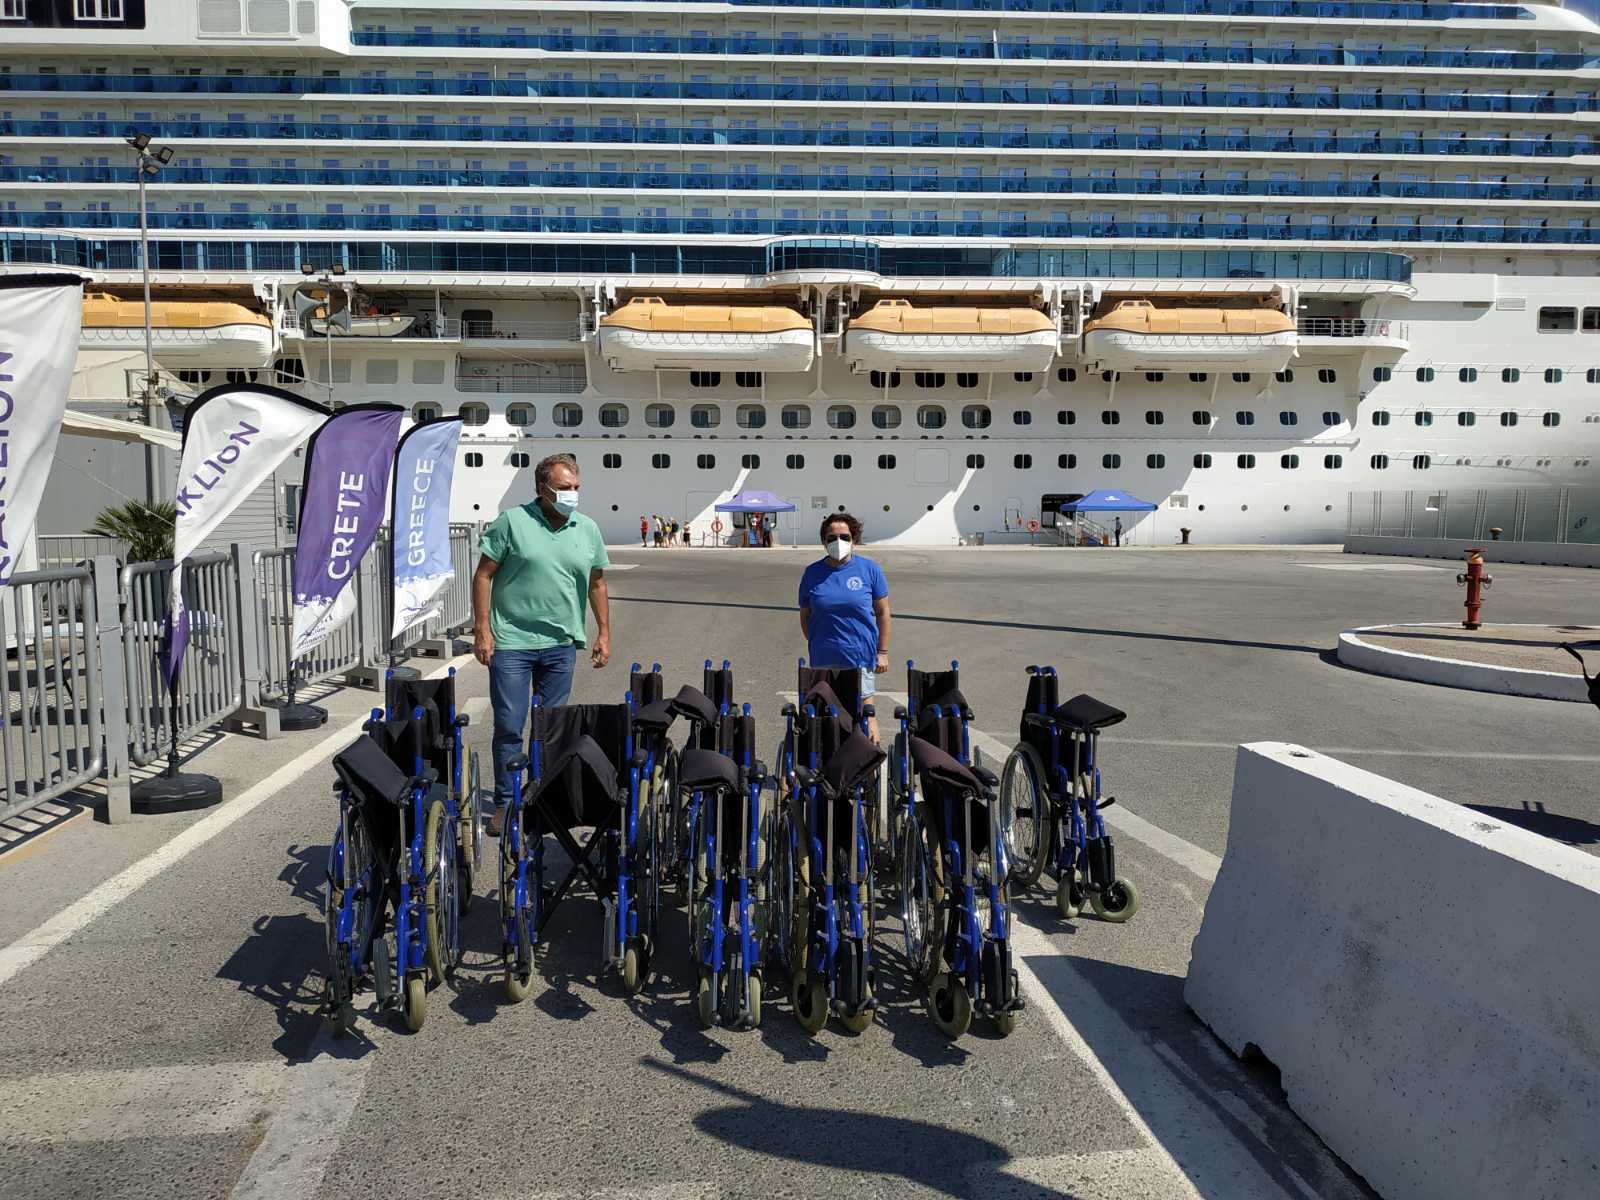 Δωρεά 11 αναπηρικών αμαξιδίων από την Costa Cruises και τον ΟΛΗ